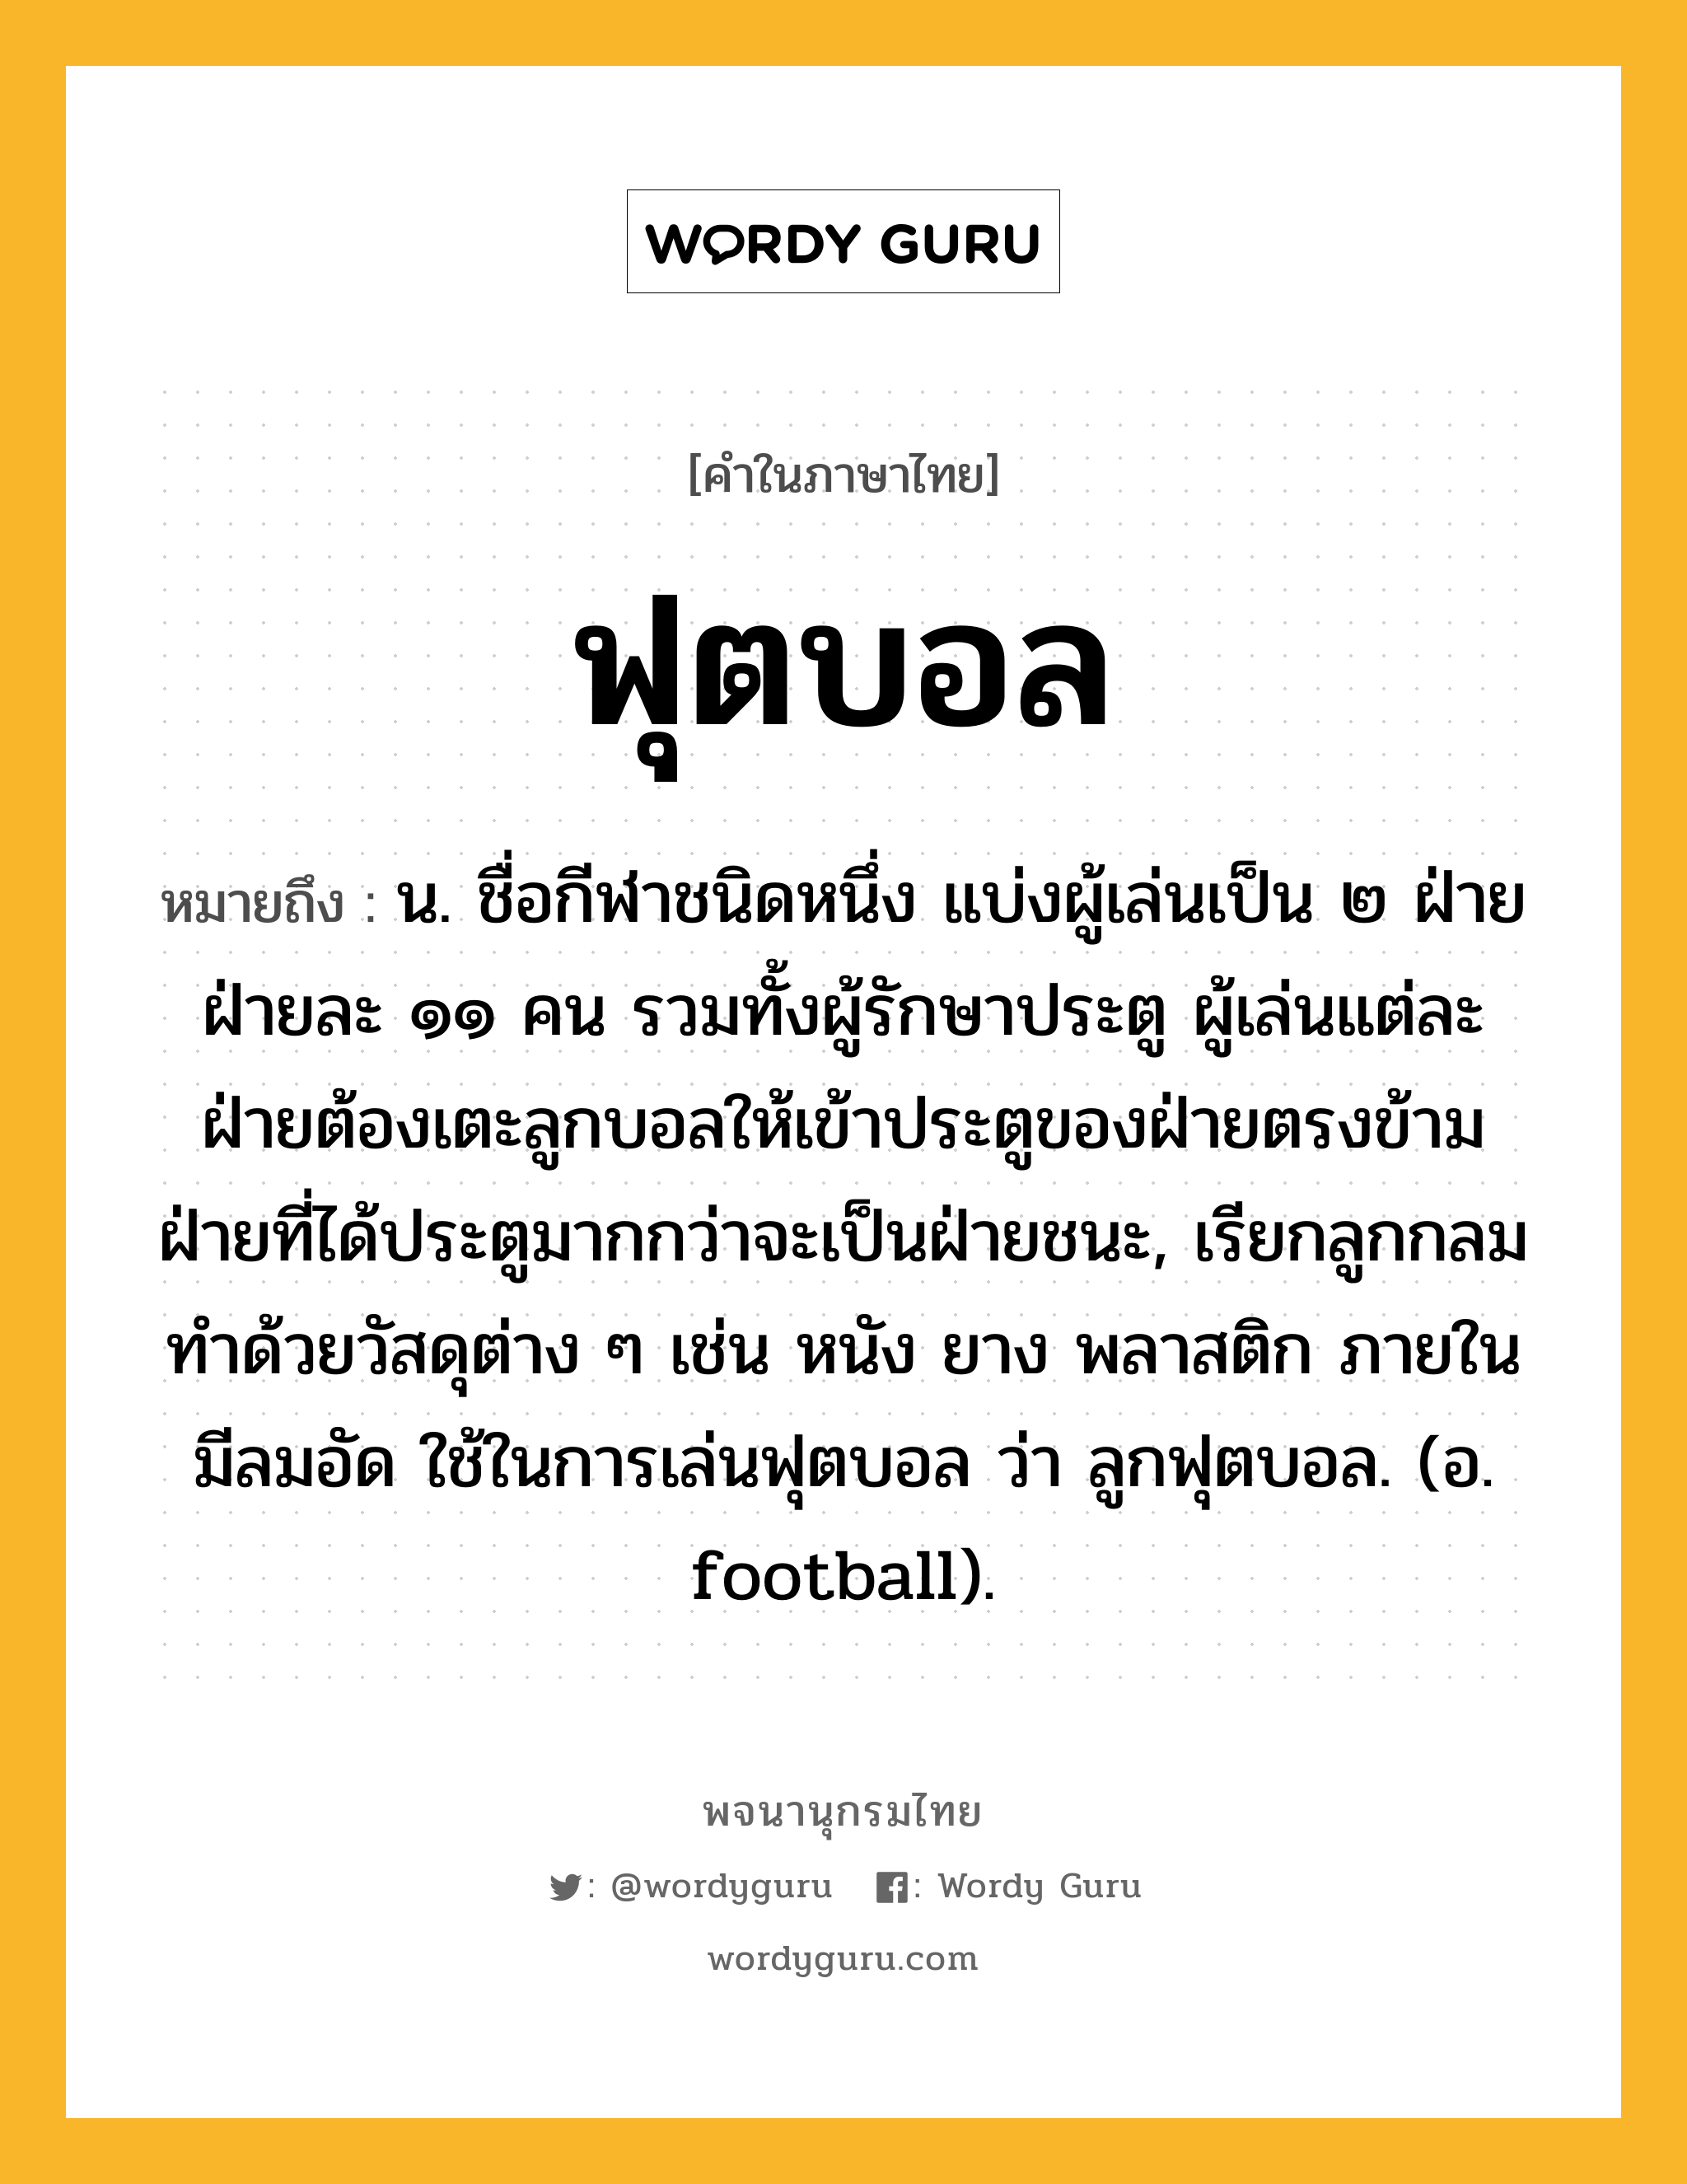 ฟุตบอล หมายถึงอะไร?, คำในภาษาไทย ฟุตบอล หมายถึง น. ชื่อกีฬาชนิดหนึ่ง แบ่งผู้เล่นเป็น ๒ ฝ่าย ฝ่ายละ ๑๑ คน รวมทั้งผู้รักษาประตู ผู้เล่นแต่ละฝ่ายต้องเตะลูกบอลให้เข้าประตูของฝ่ายตรงข้าม ฝ่ายที่ได้ประตูมากกว่าจะเป็นฝ่ายชนะ, เรียกลูกกลมทำด้วยวัสดุต่าง ๆ เช่น หนัง ยาง พลาสติก ภายในมีลมอัด ใช้ในการเล่นฟุตบอล ว่า ลูกฟุตบอล. (อ. football).